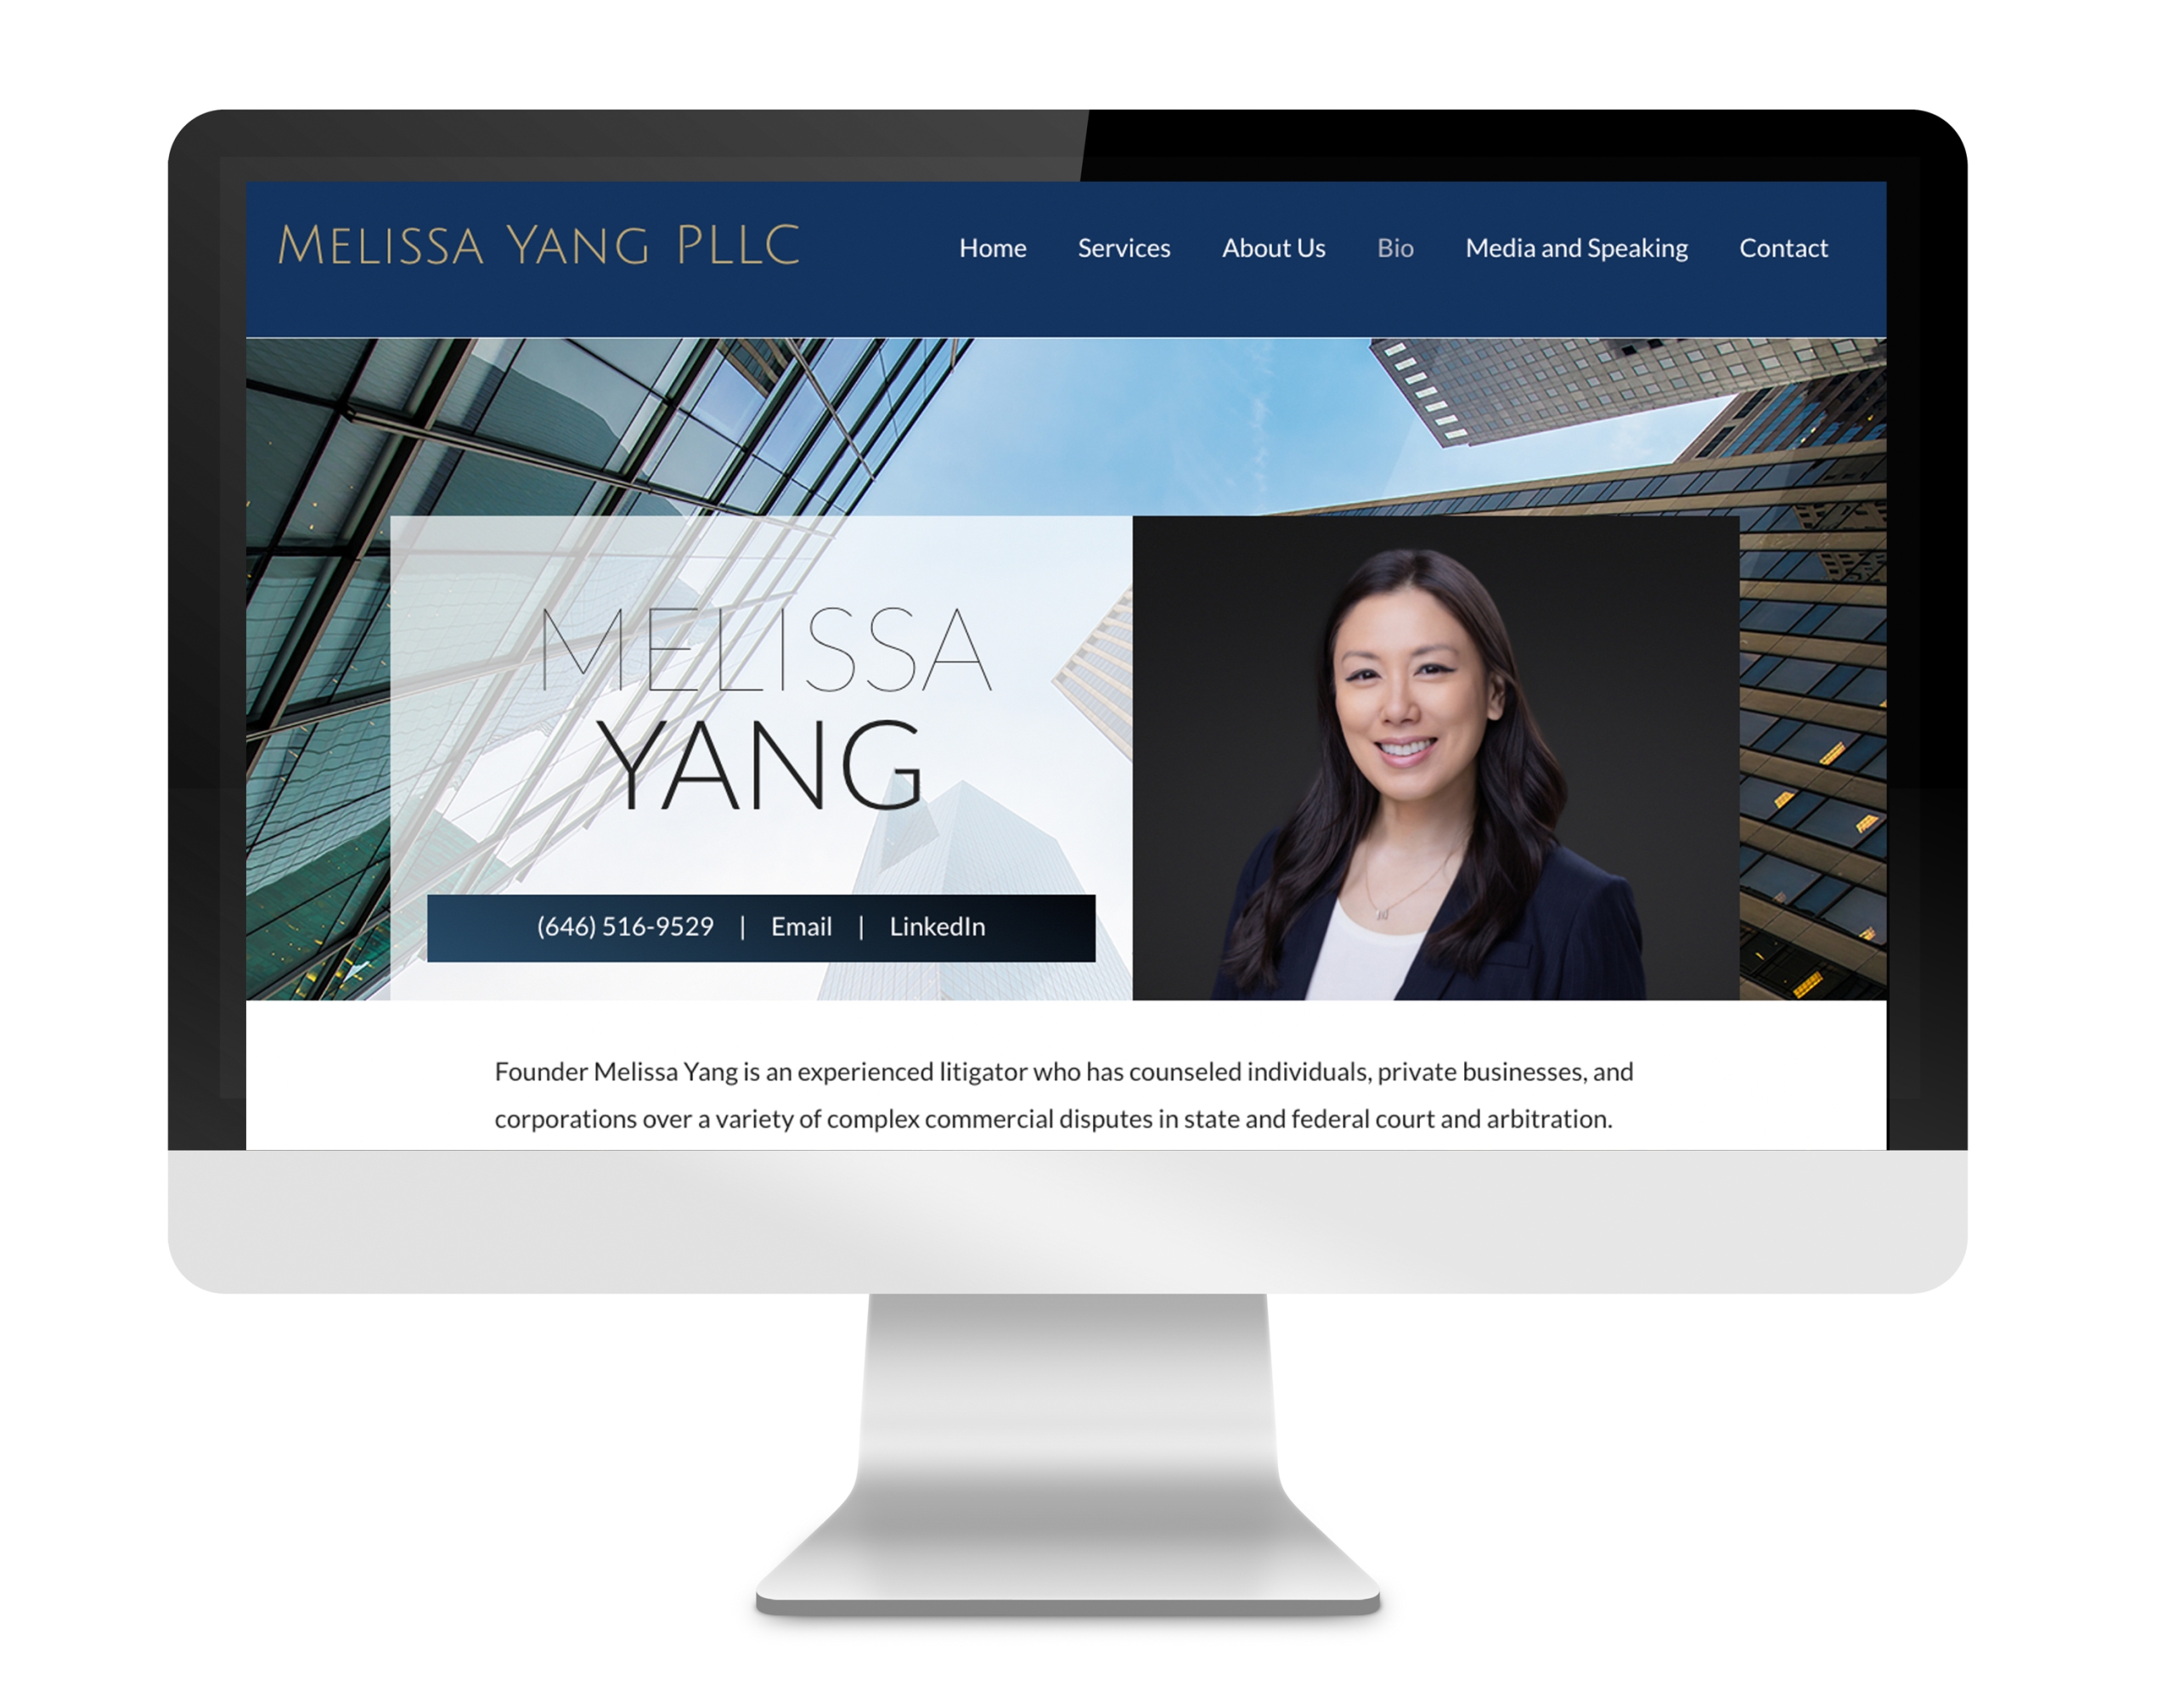 Melissa Yang PLLC website designed by DLS Design